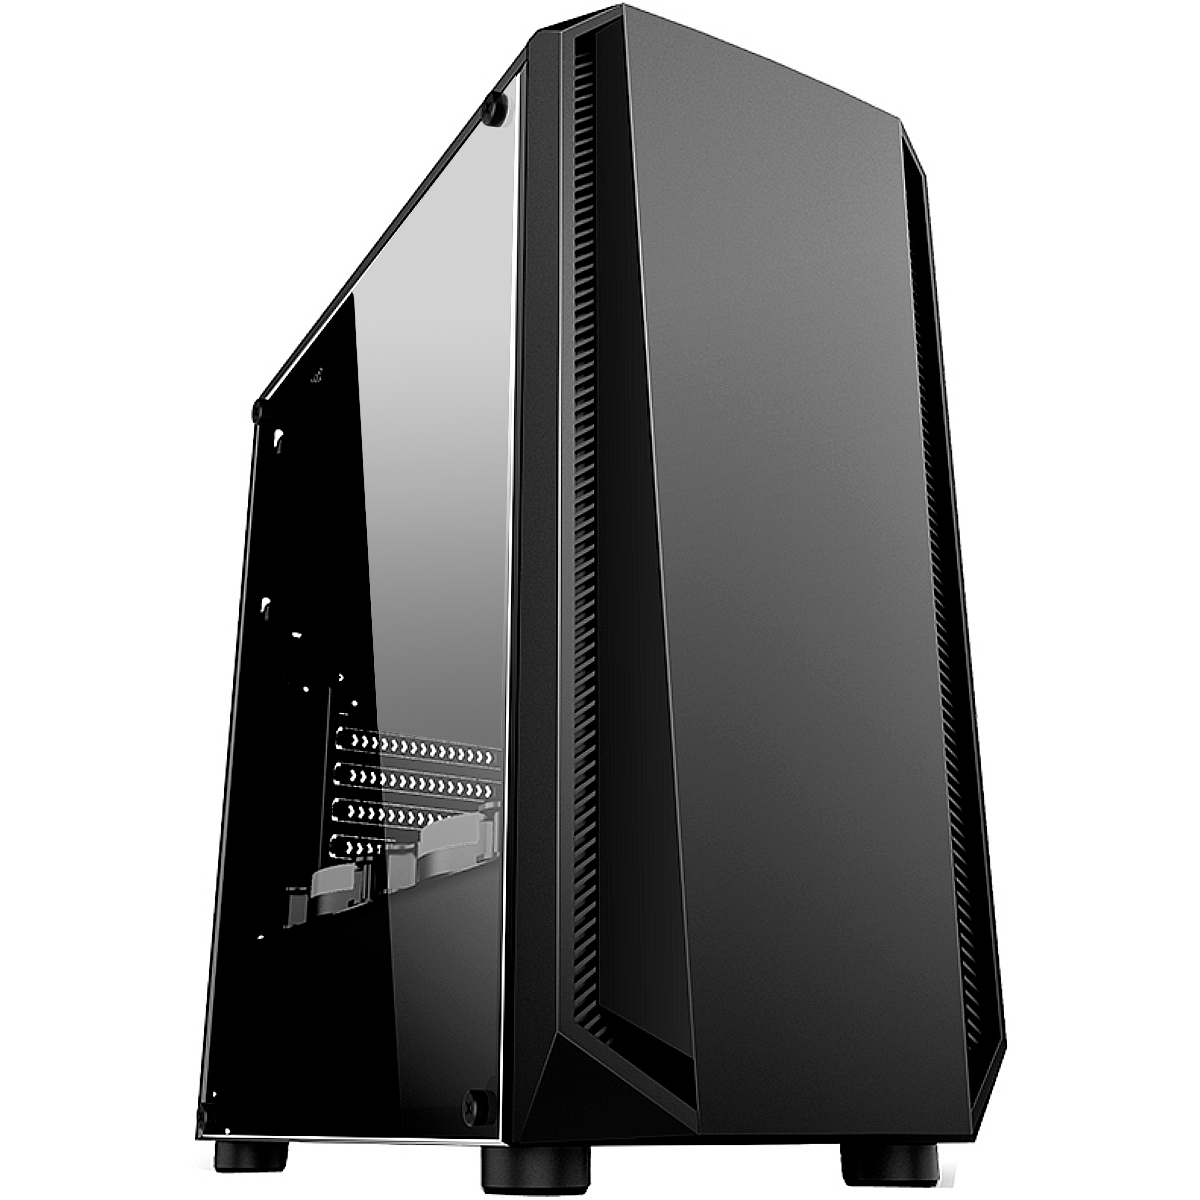 PC Gamer Ryzen 3600X - Asus Prime A320M-K/BR, 16GB DDR4 (2x8GB), SSD 240GB, GeForce GTX 1650 Super